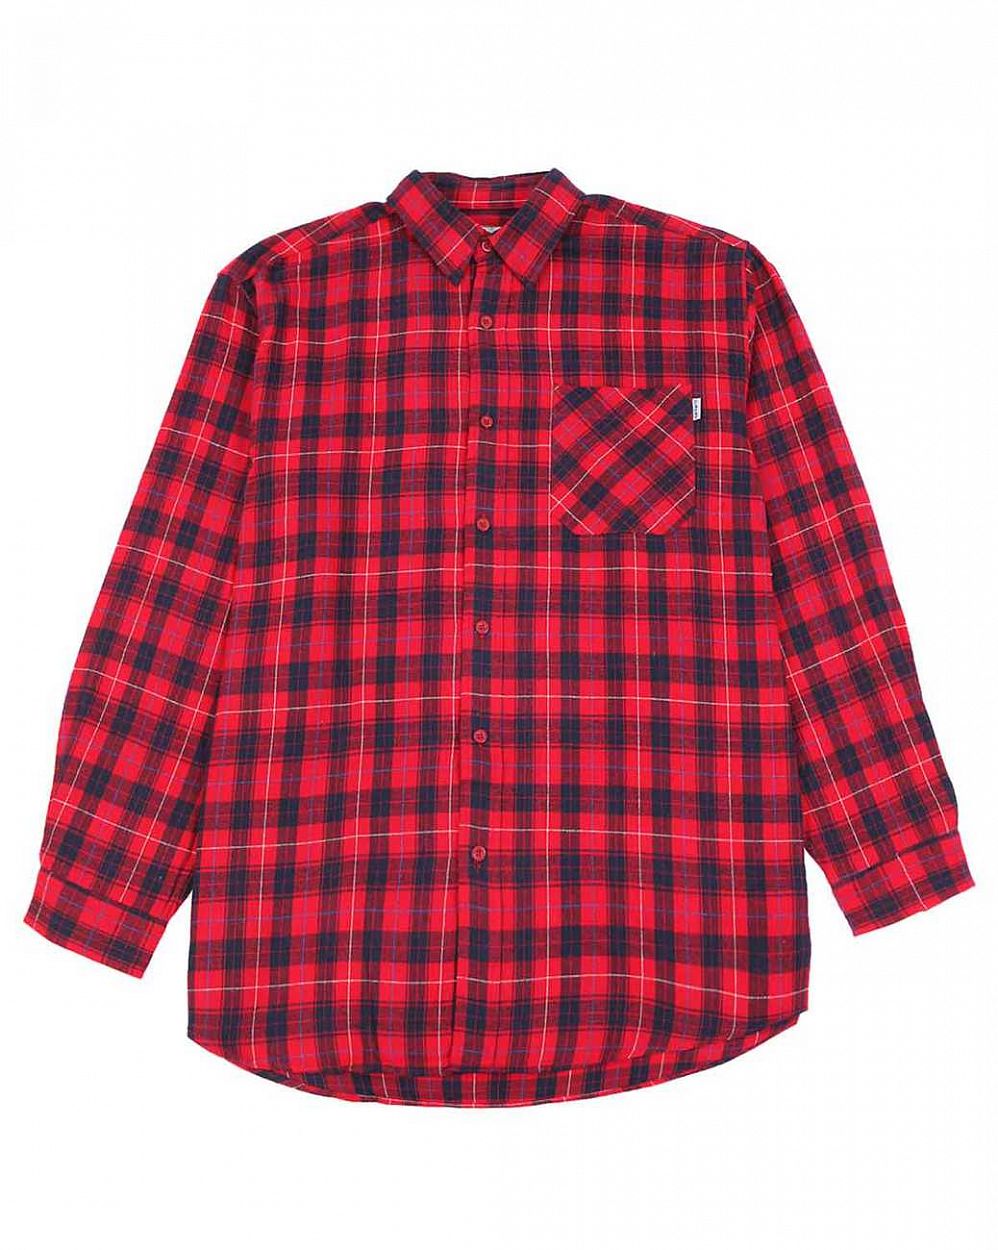 Рубашка мужская фланелевая Publish 250 Flannel Check Red отзывы